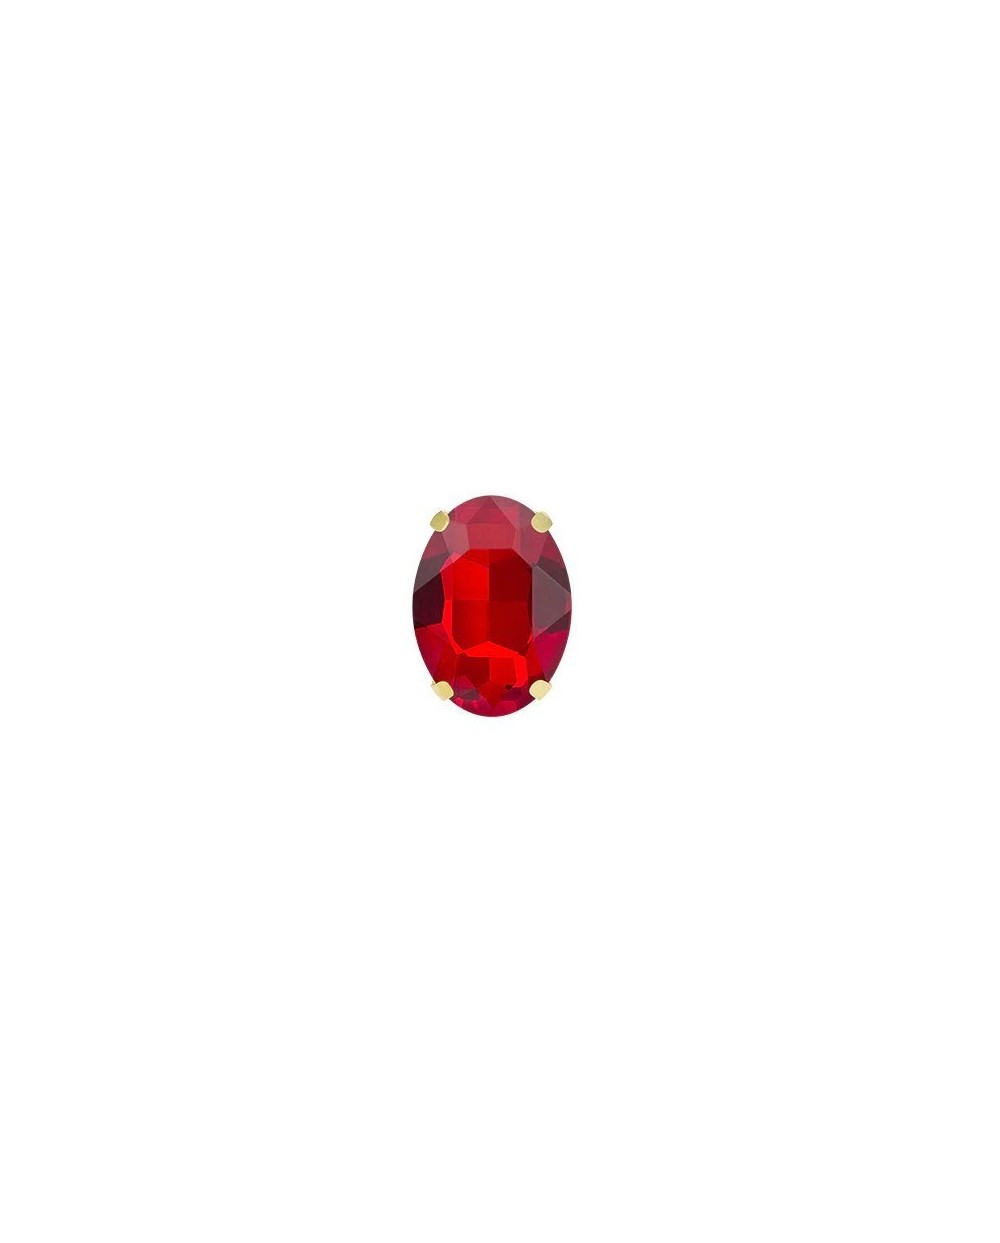 Ovalūs prisiuvami kristalai, 10x14mm, raudonos sp., 1 vnt.